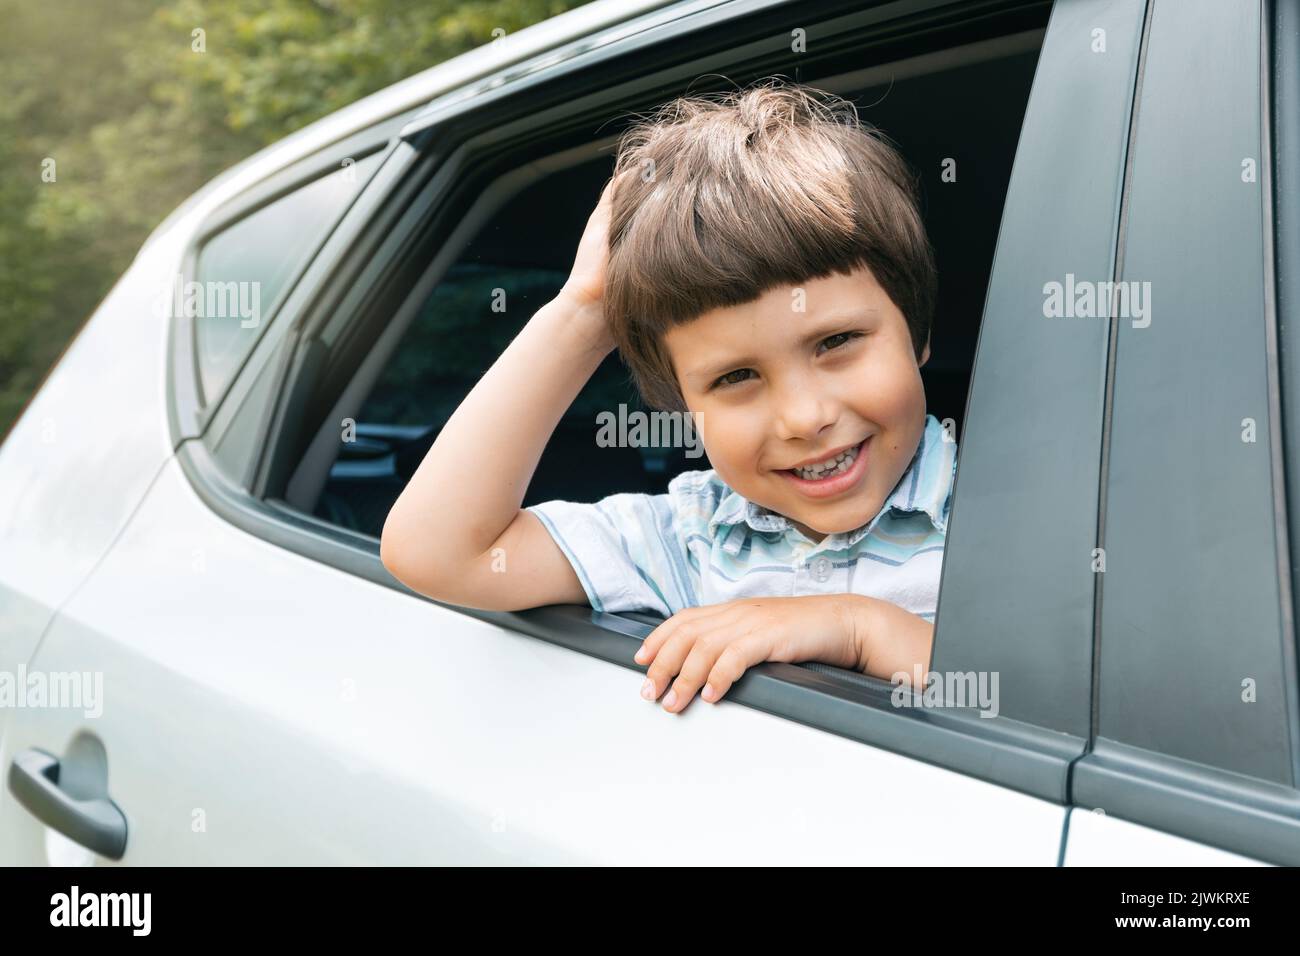 Fröhliches kaukasisches kleines Kind fährt mit dem Auto in den Urlaub und schaut aus dem Fenster, genießt Reise und Wochenende, draußen Stockfoto